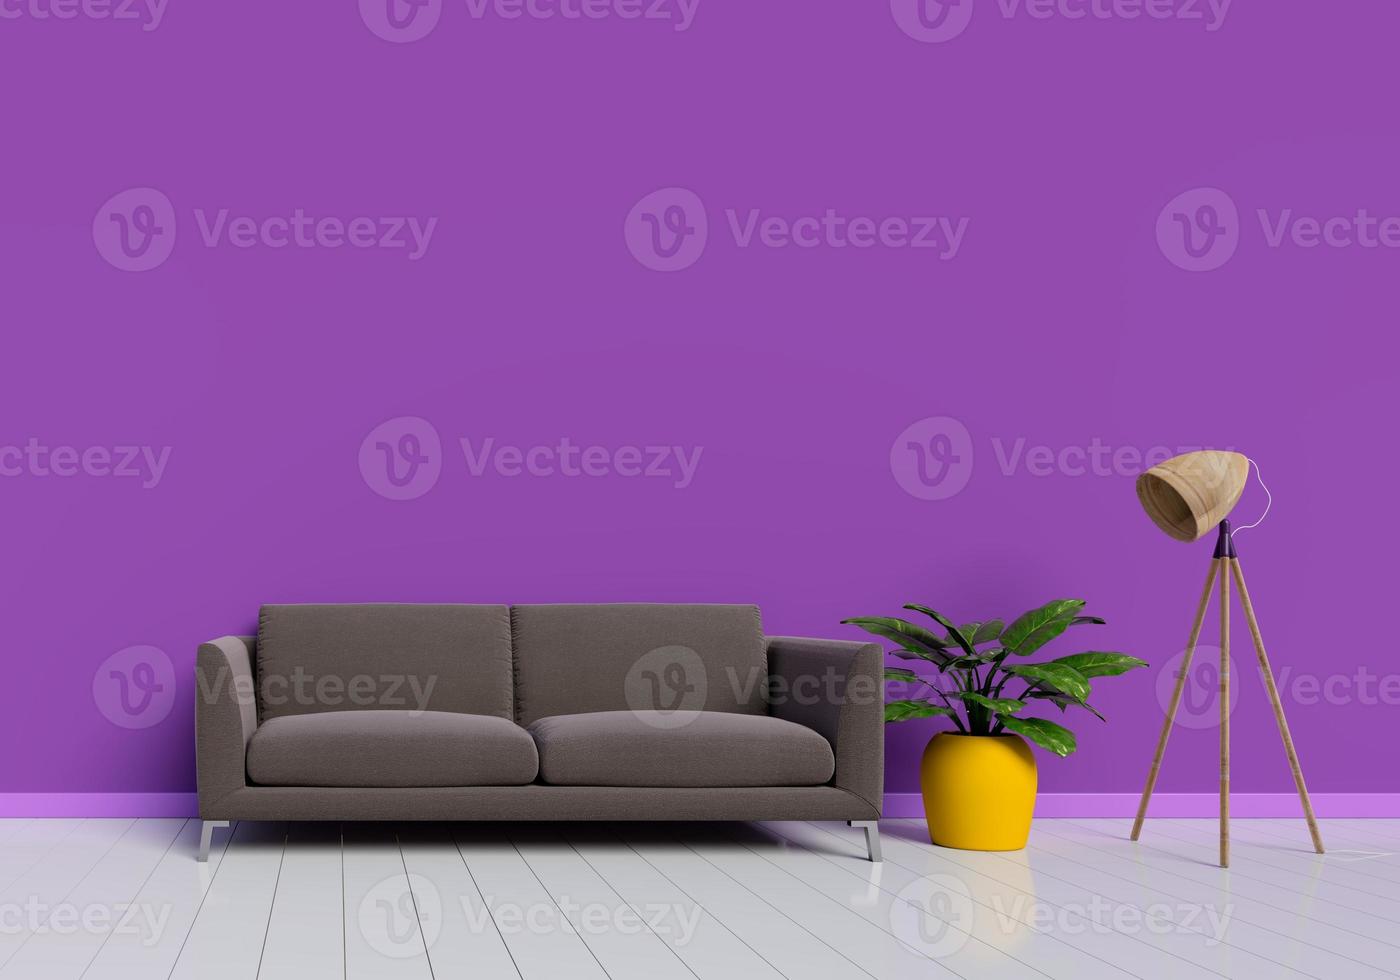 modernes Innendesign des lila Wohnzimmers mit braunem Sofa foto